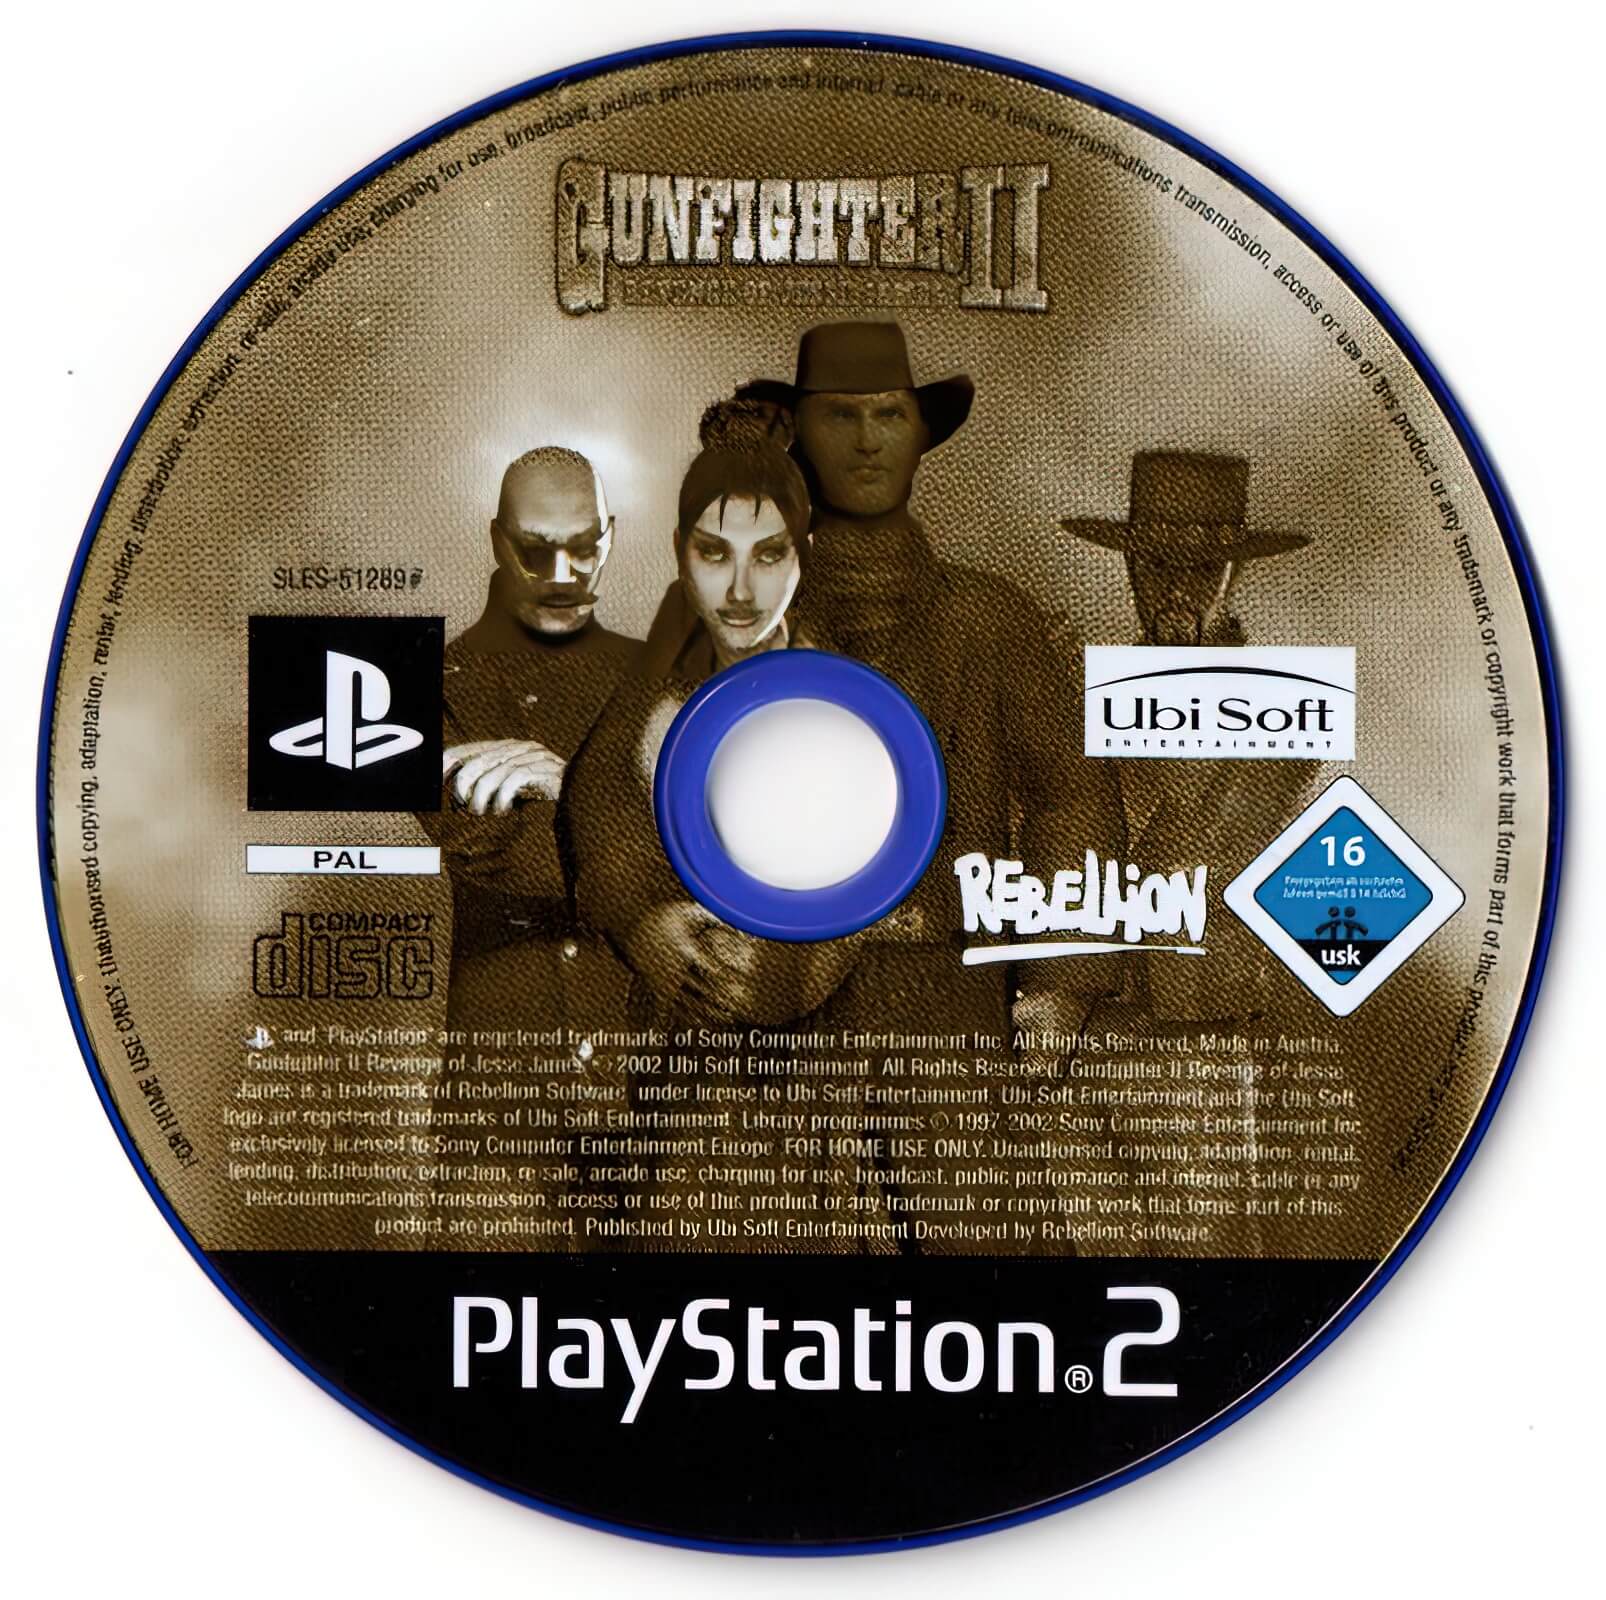 Лицензионный диск Gunfighter II Revenge of Jesse James для PlayStation 2